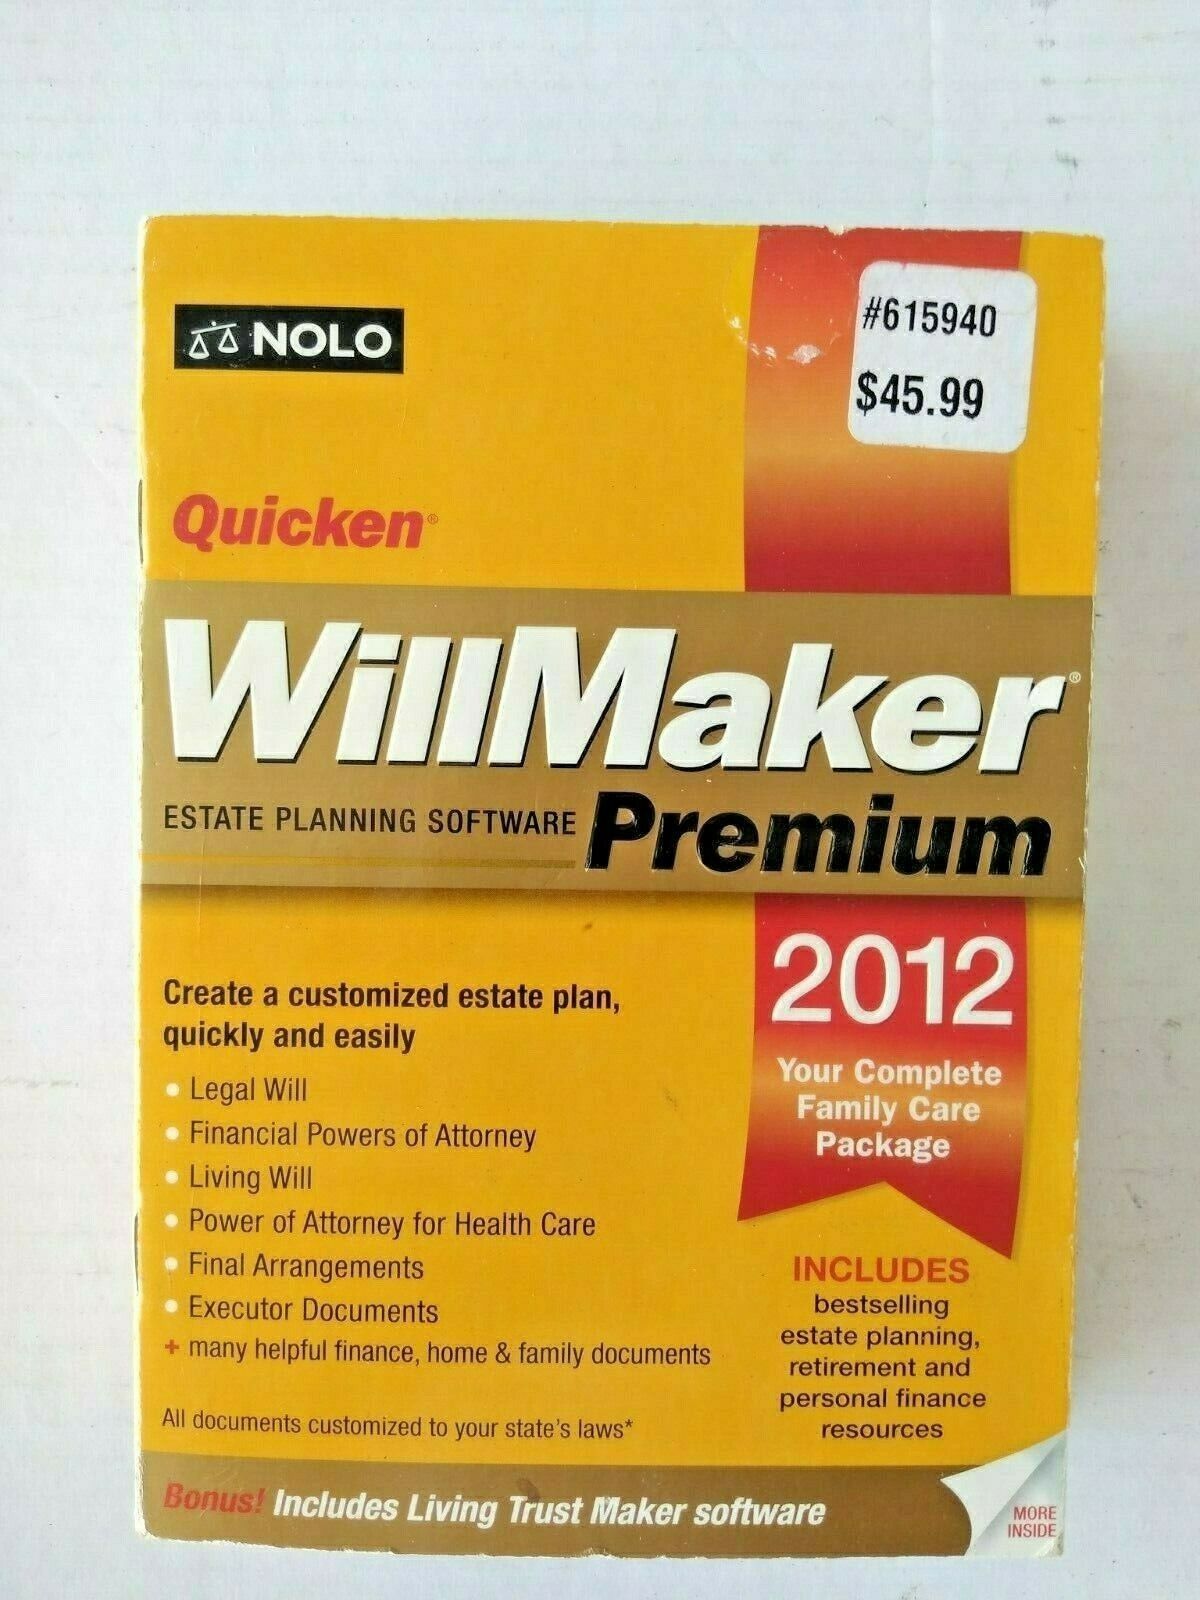 NOLO Quicken Willmaker Premium Estate Planning Software (XP, Vista, Windows 7)